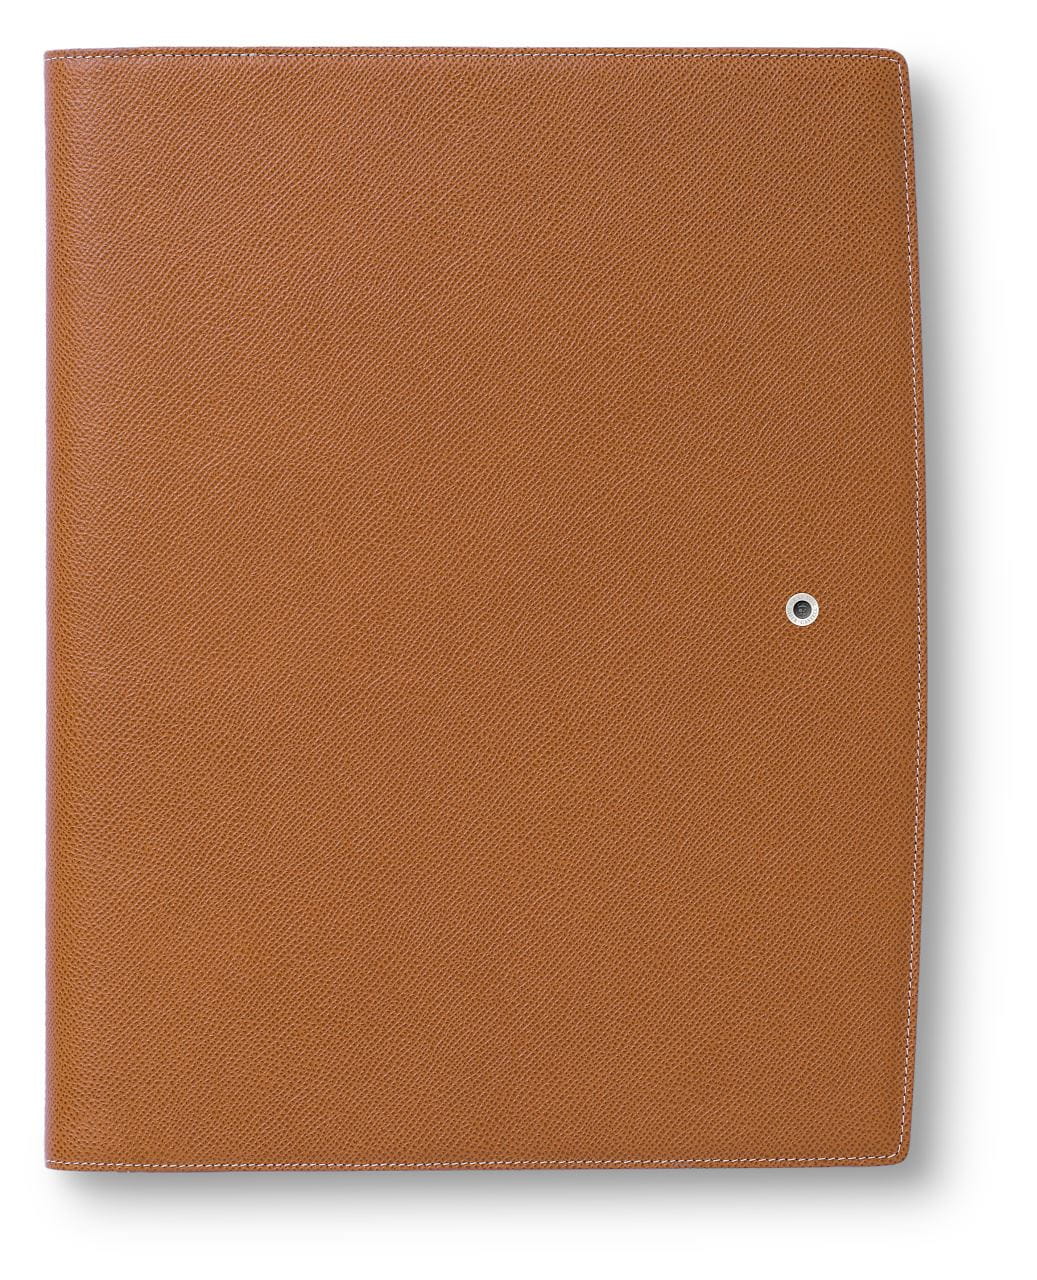 Graf-von-Faber-Castell - Porta bloco A4, marrom granulado